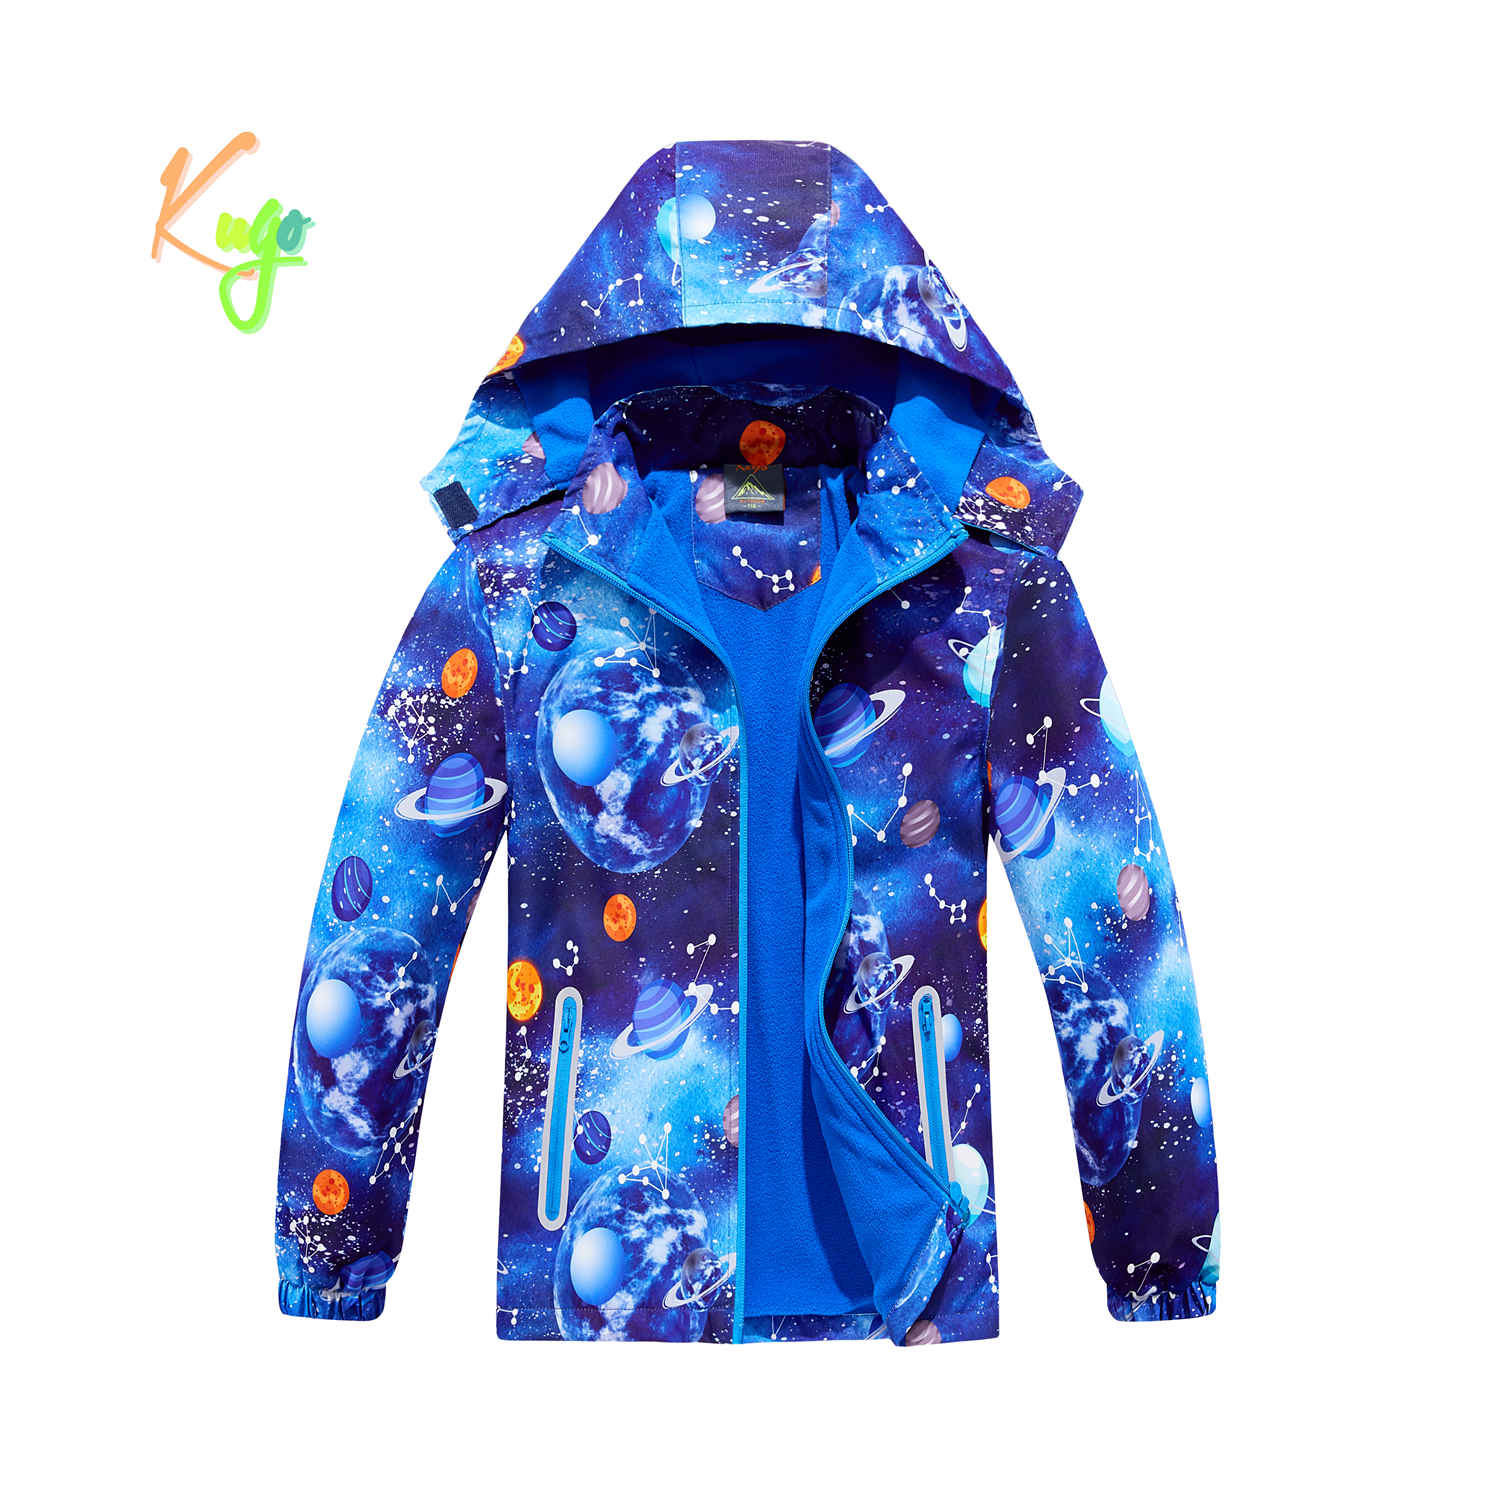 Chlapecká podzimní bunda, zateplená - KUGO B2858, modrá, planety Barva: Modrá, Velikost: 110